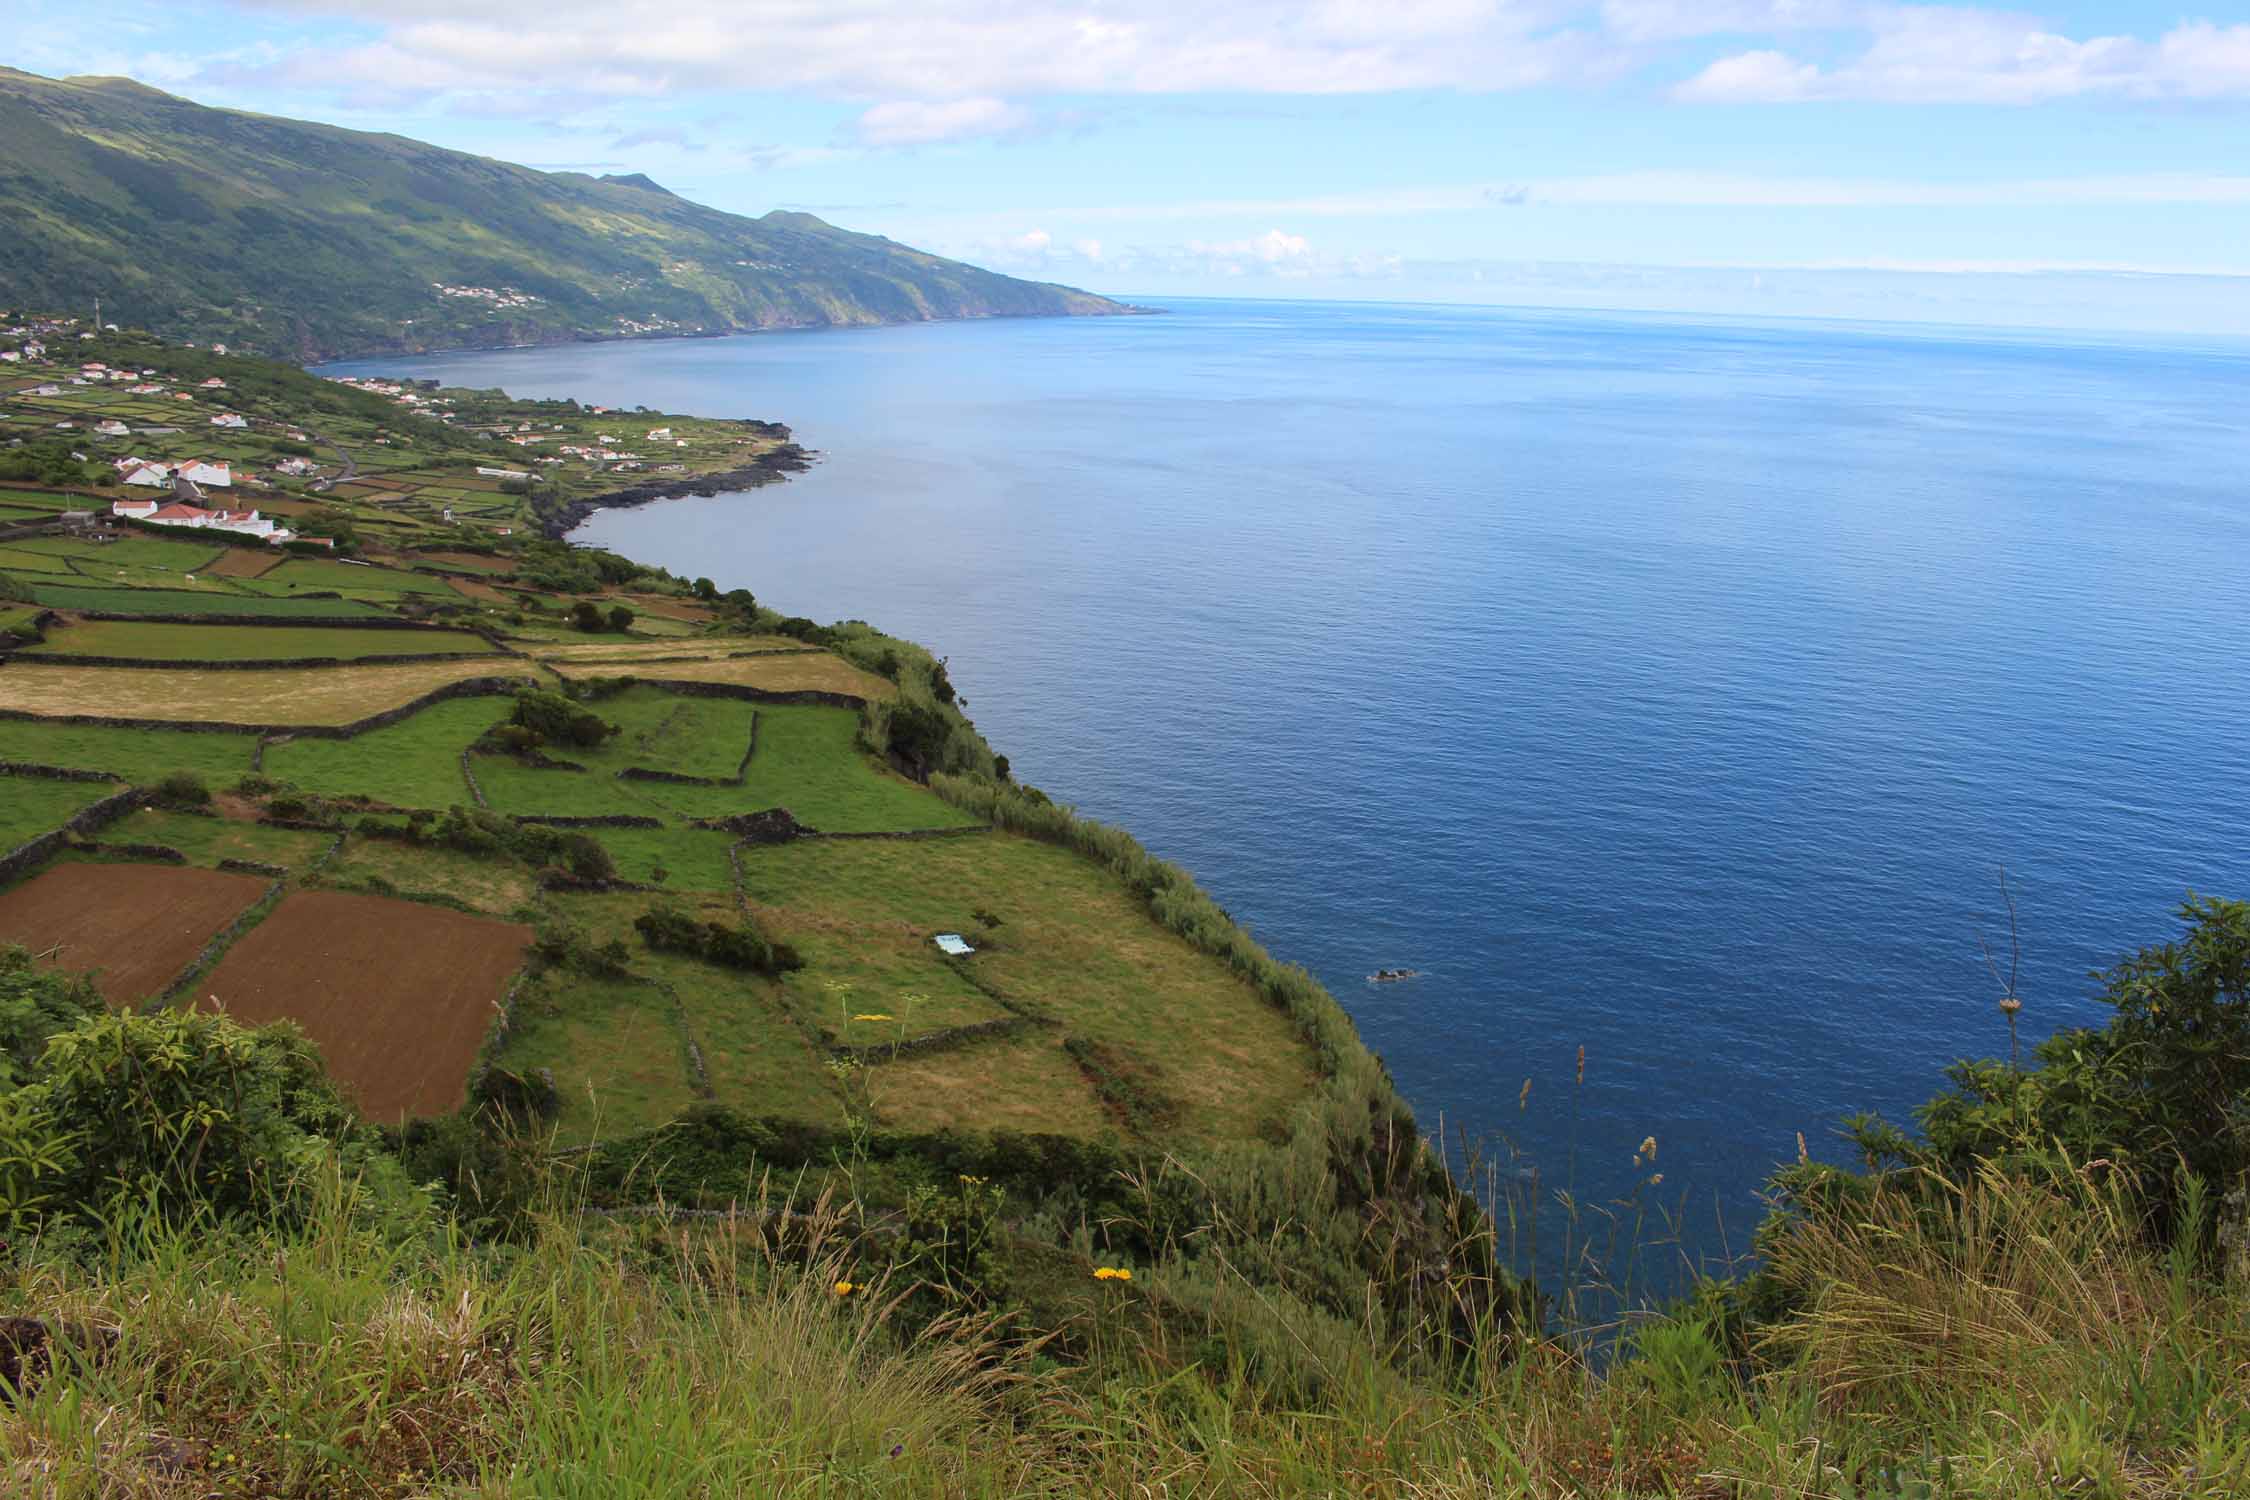 Magnifique paysage de la côte sud de l'ile de Pico, Açores